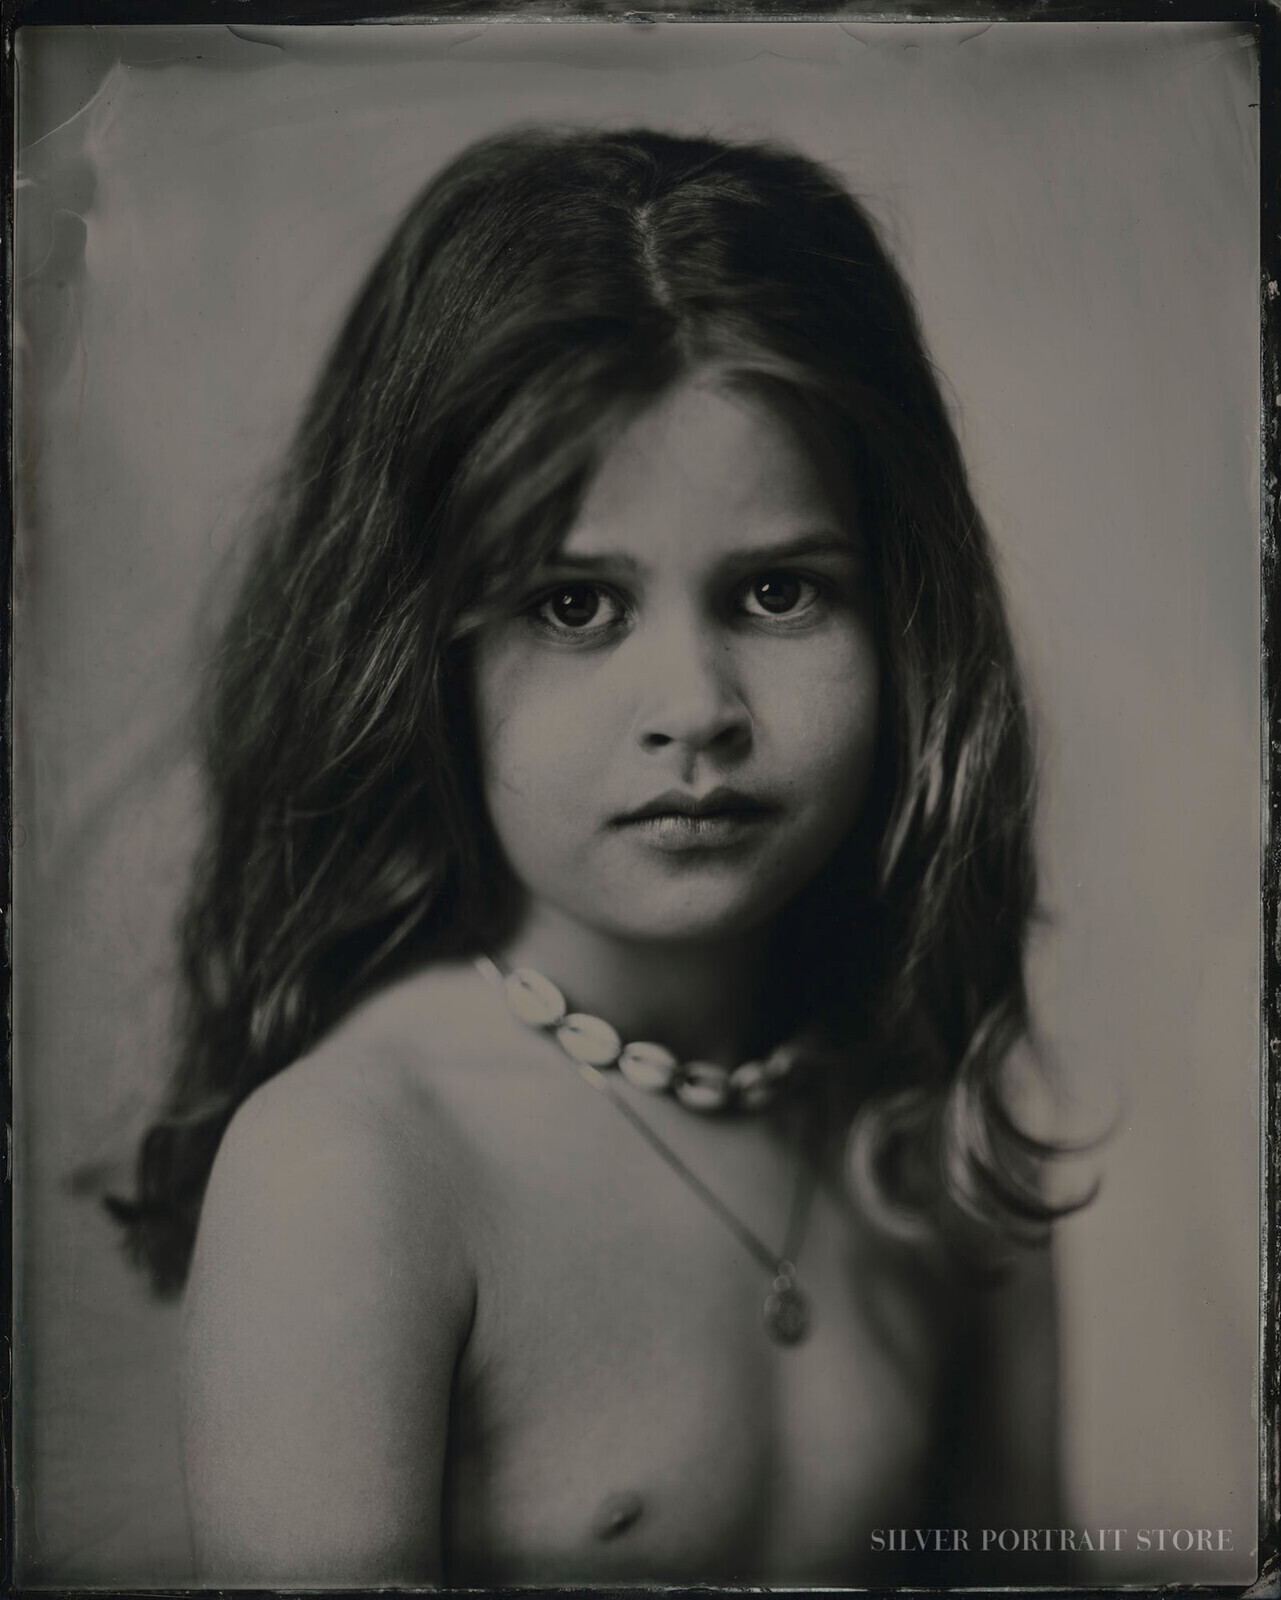 Vesper-Silver Portrait Store-Wet plate collodion-Tintype 20 x 25 cm.